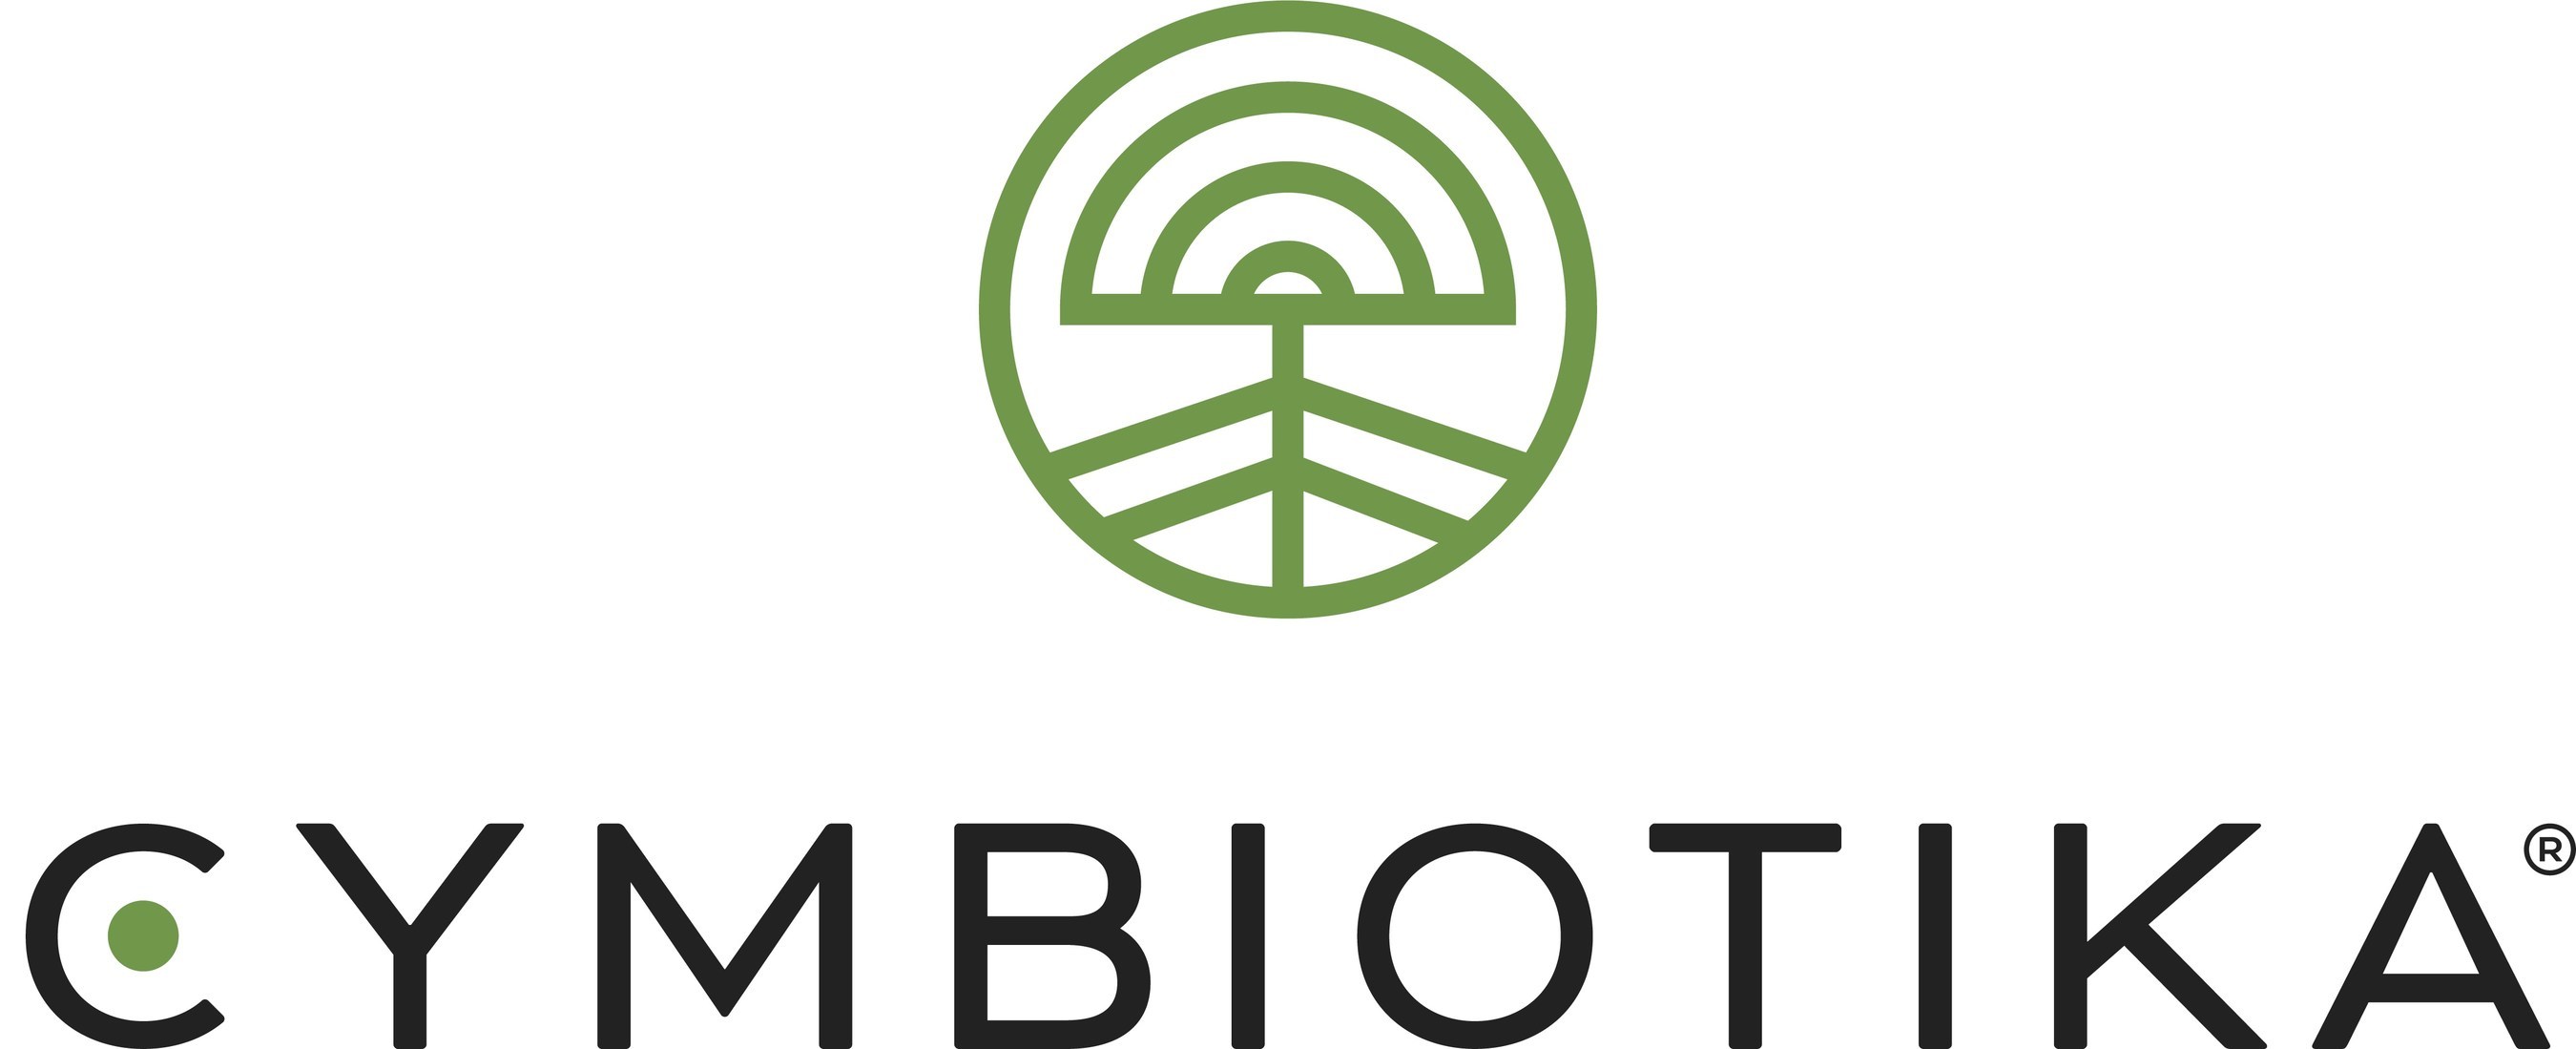 Cymbiotika Logo (PRNewsfoto/Cymbiotika)